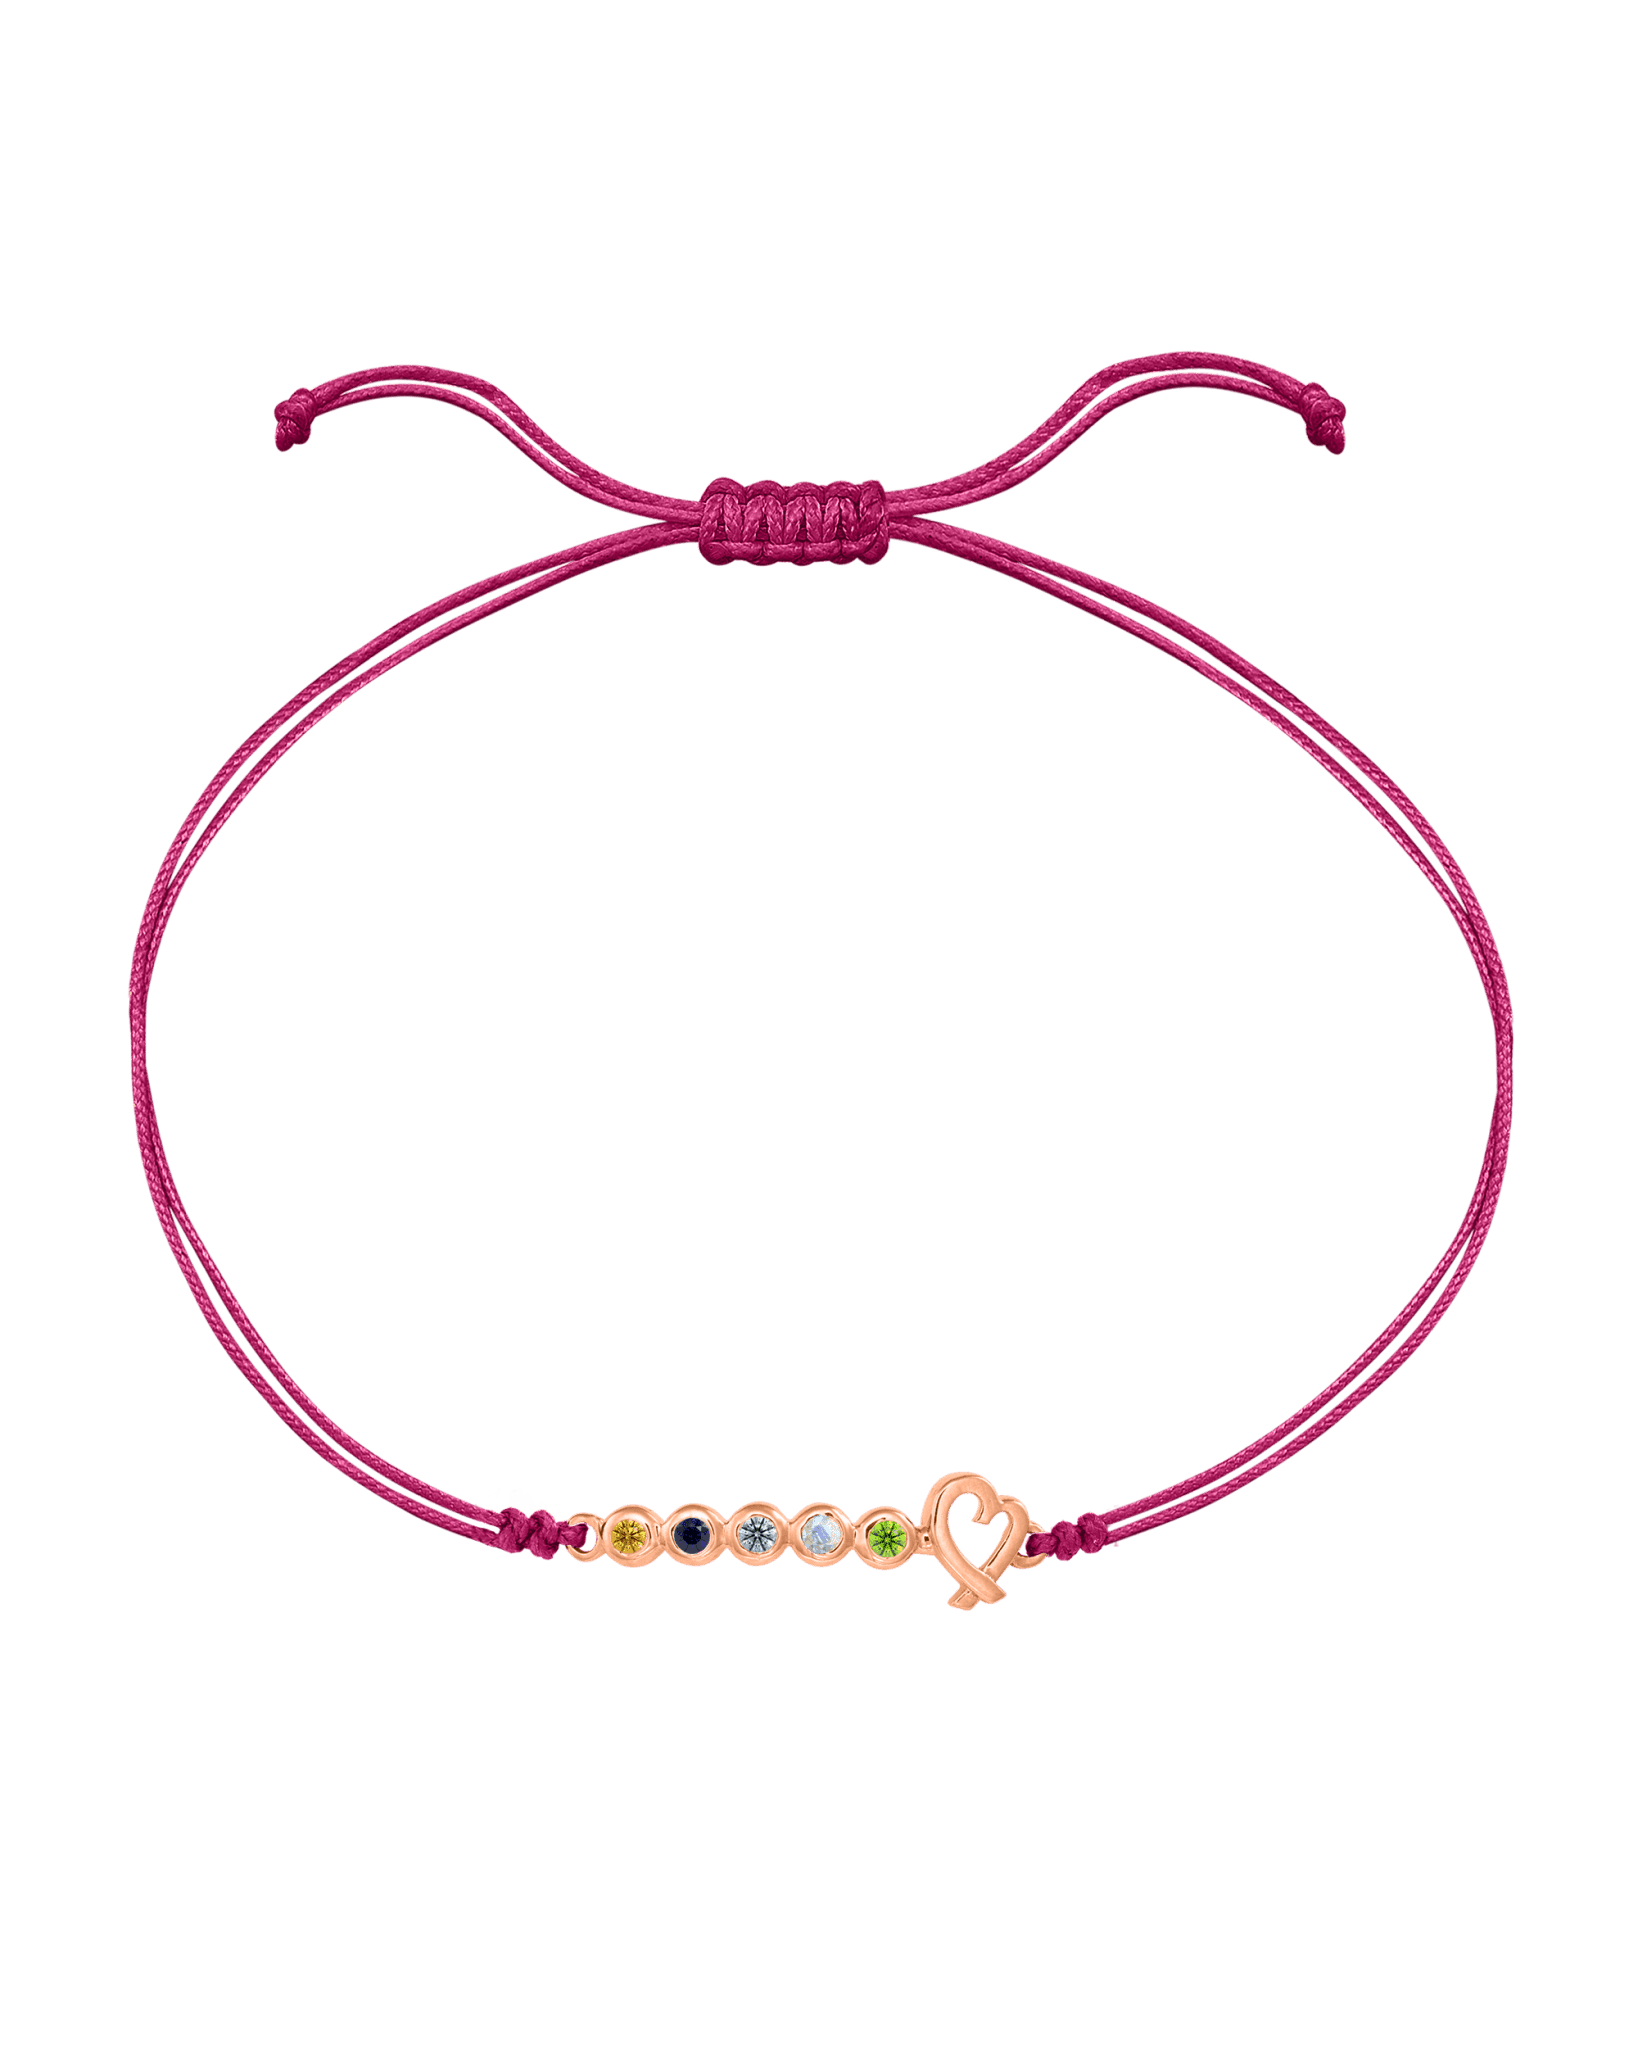 Birthstone Bar Heart Bracelet - 14K Rose Gold Bracelets 14K Solid Gold Pink 2 